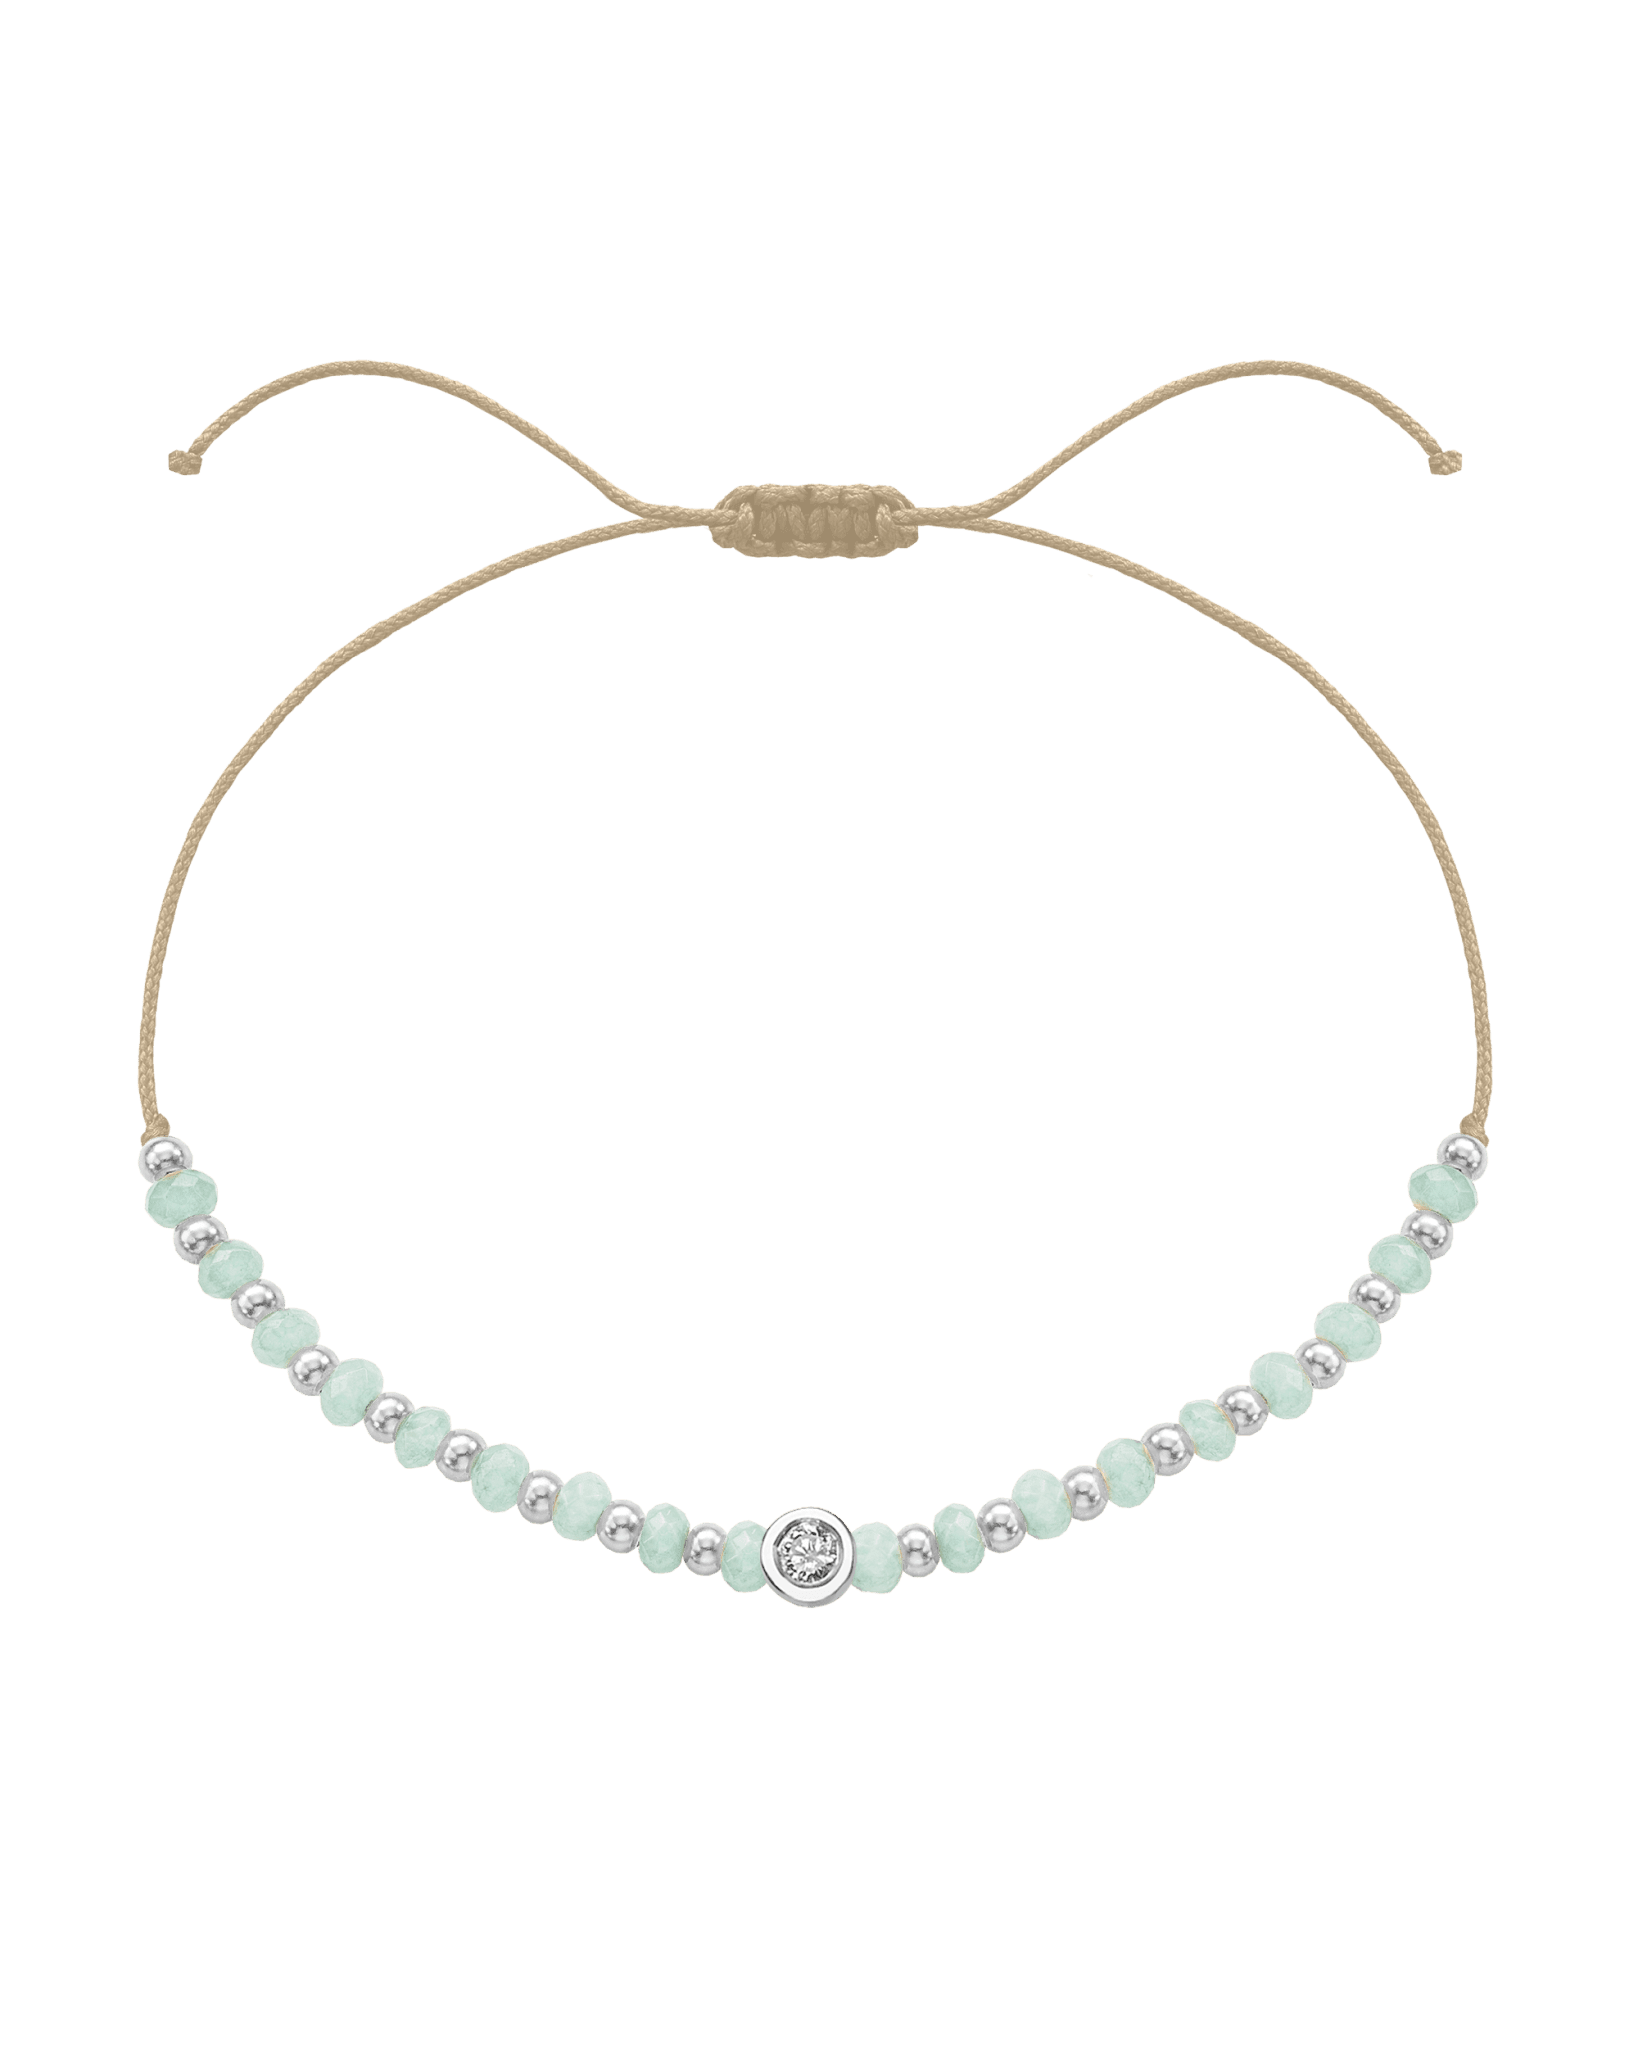 Apatite Gemstone String of Love Bracelet for Inspiration - 14K White Gold Bracelets 14K Solid Gold Beige Medium: 0.04ct 